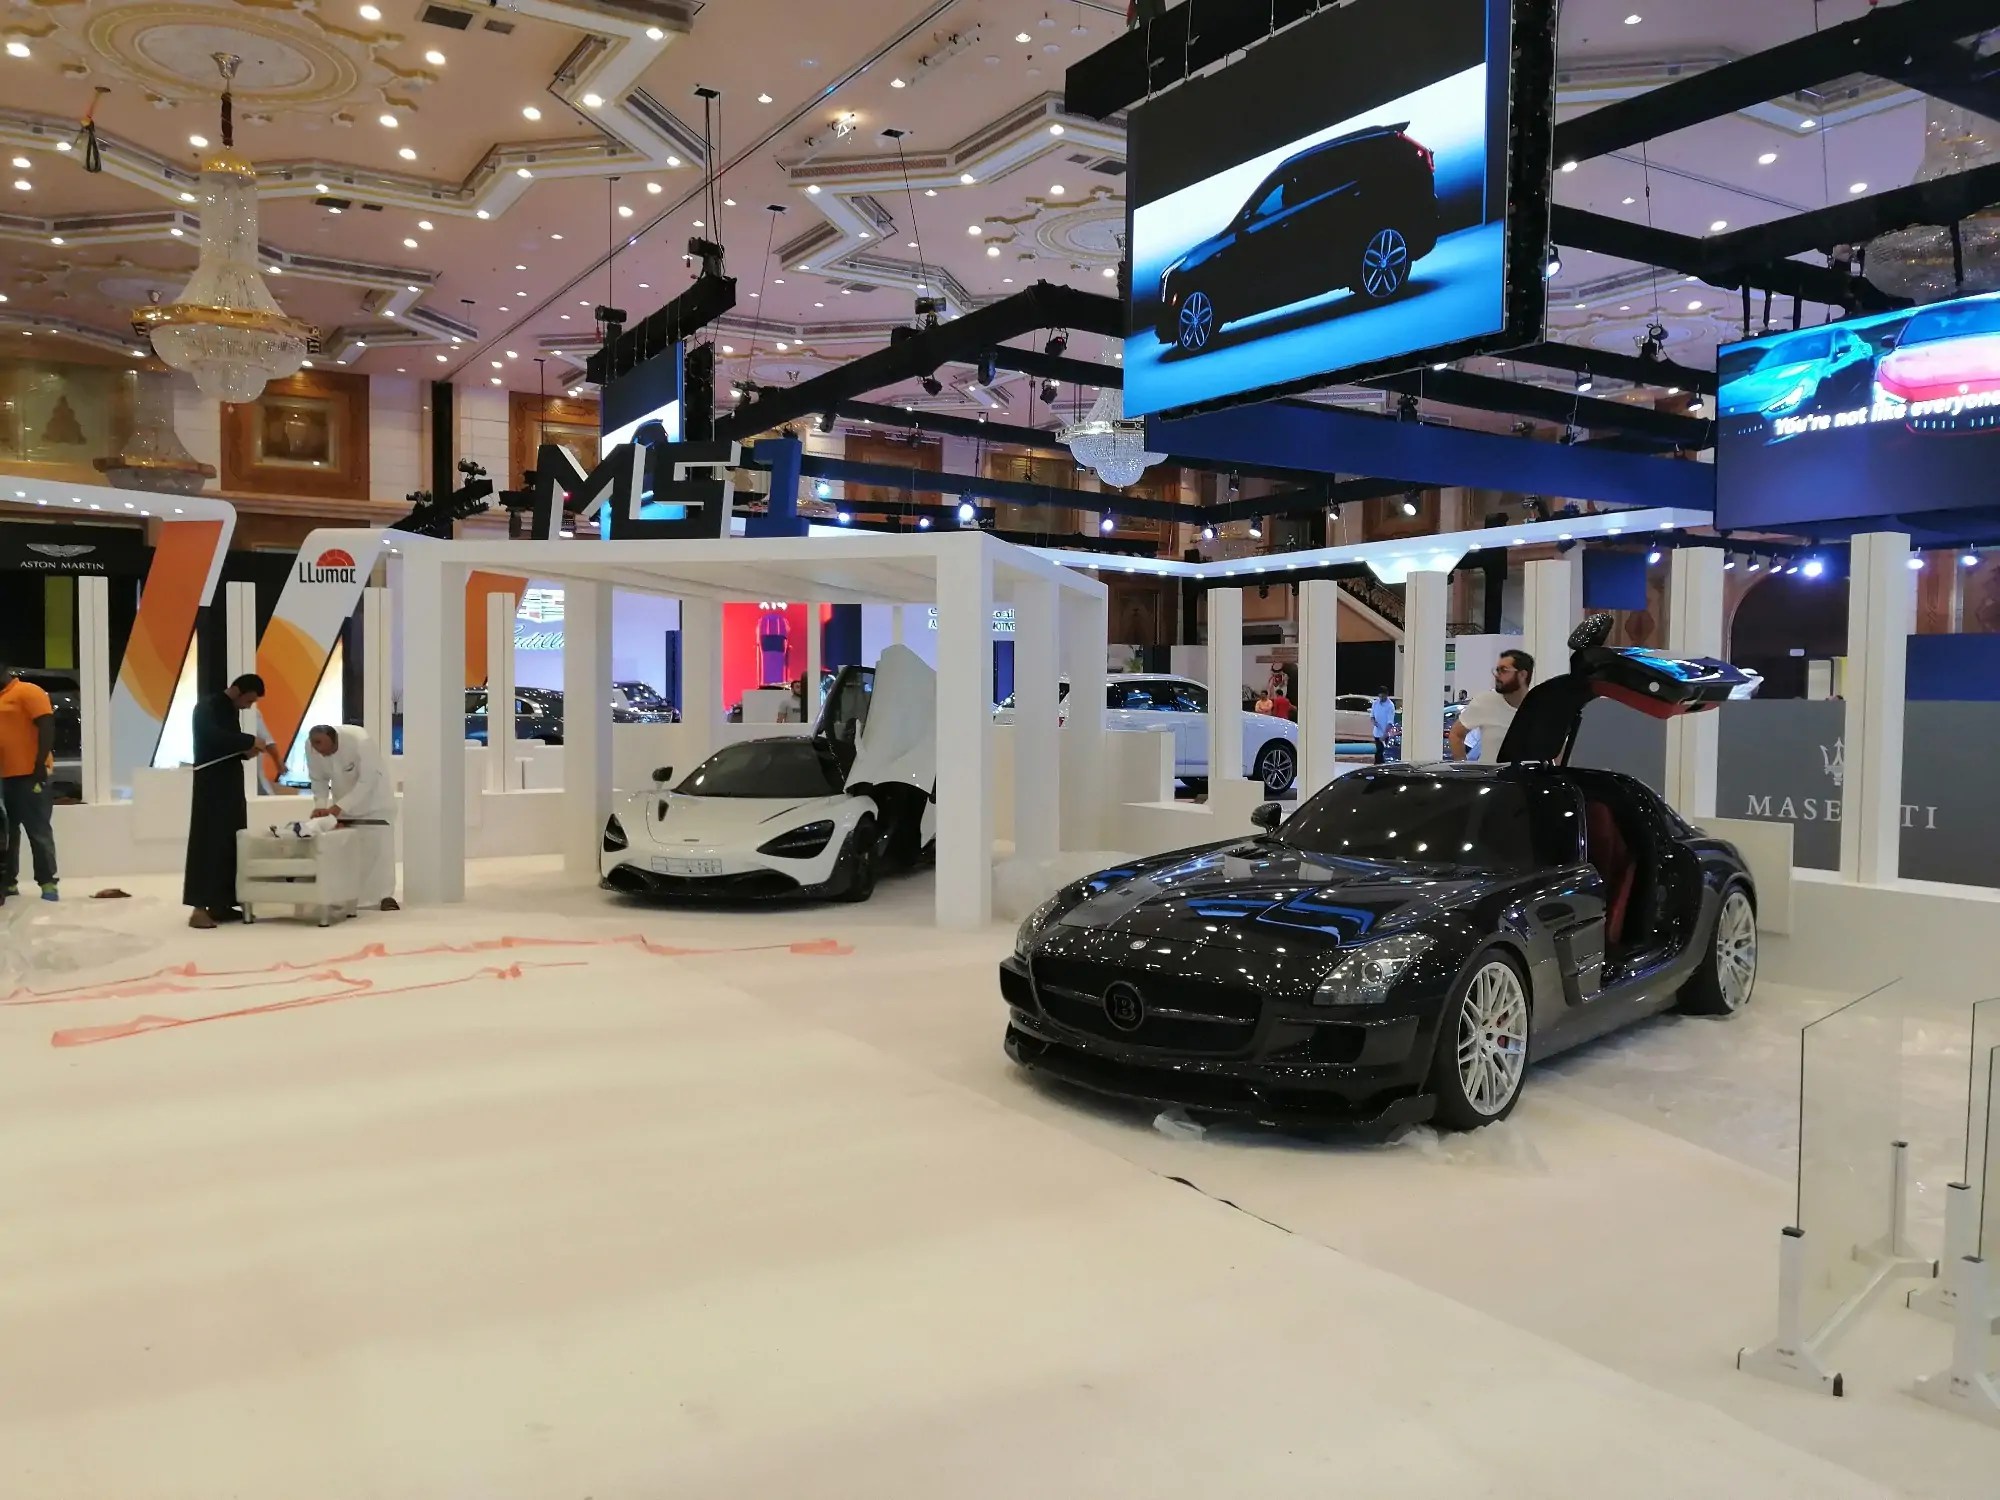 انطلاق معرض إكسس 12 للسيارات الفارهة 2019 في جدة